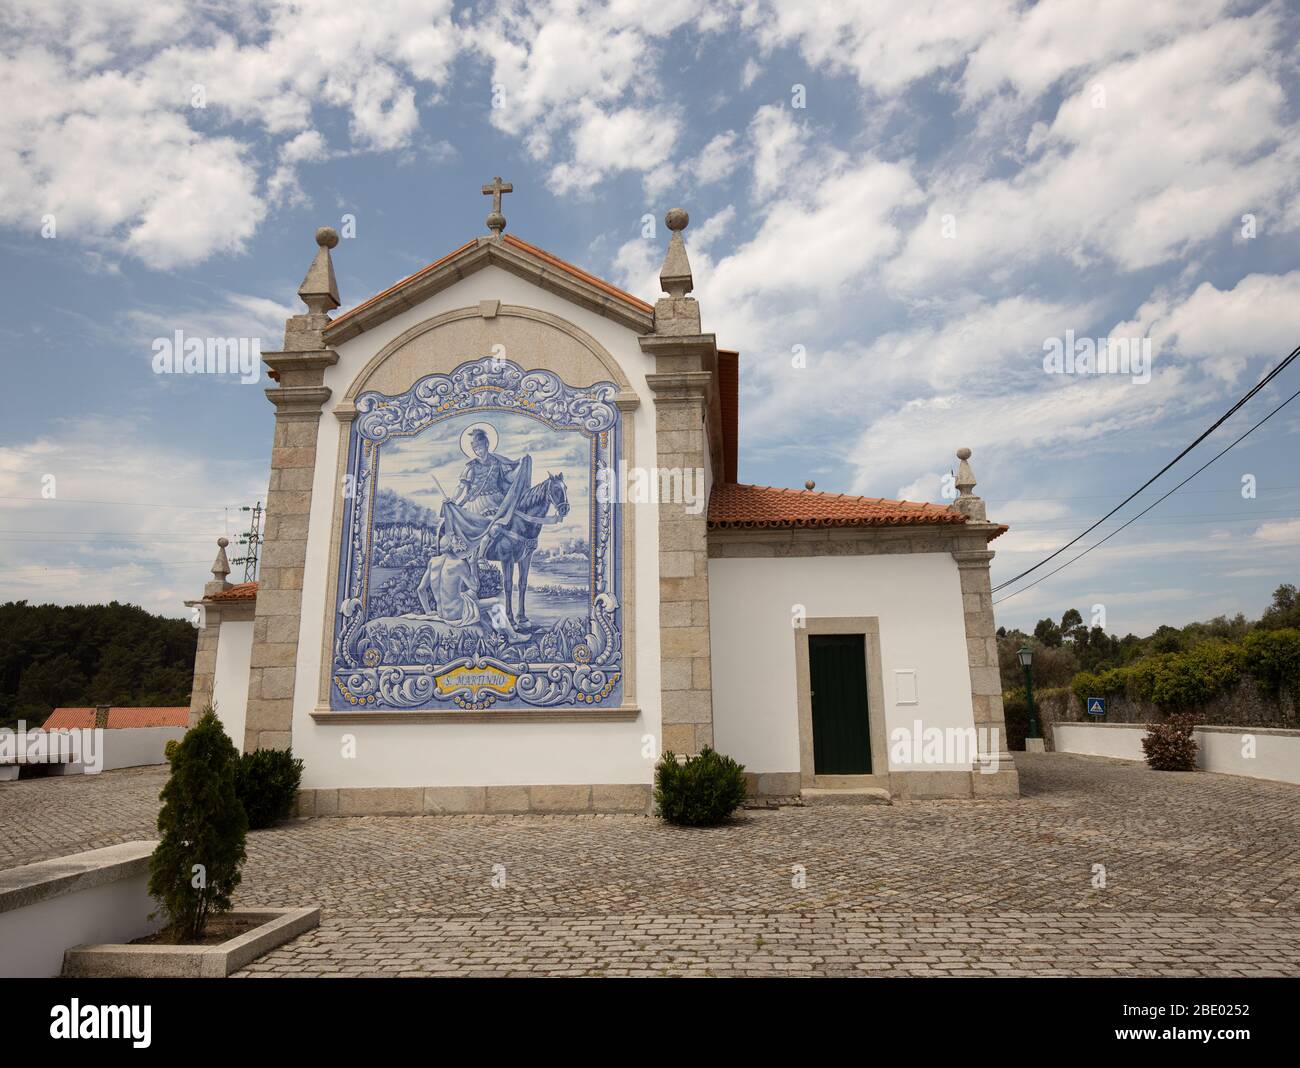 Saint Martinho dans des tuiles bleu azulejo détaillées sur le mur pignon de l'église de Freixieiro de Soutelo datant de 1258, à Viana do Castelo, Portugal . Banque D'Images